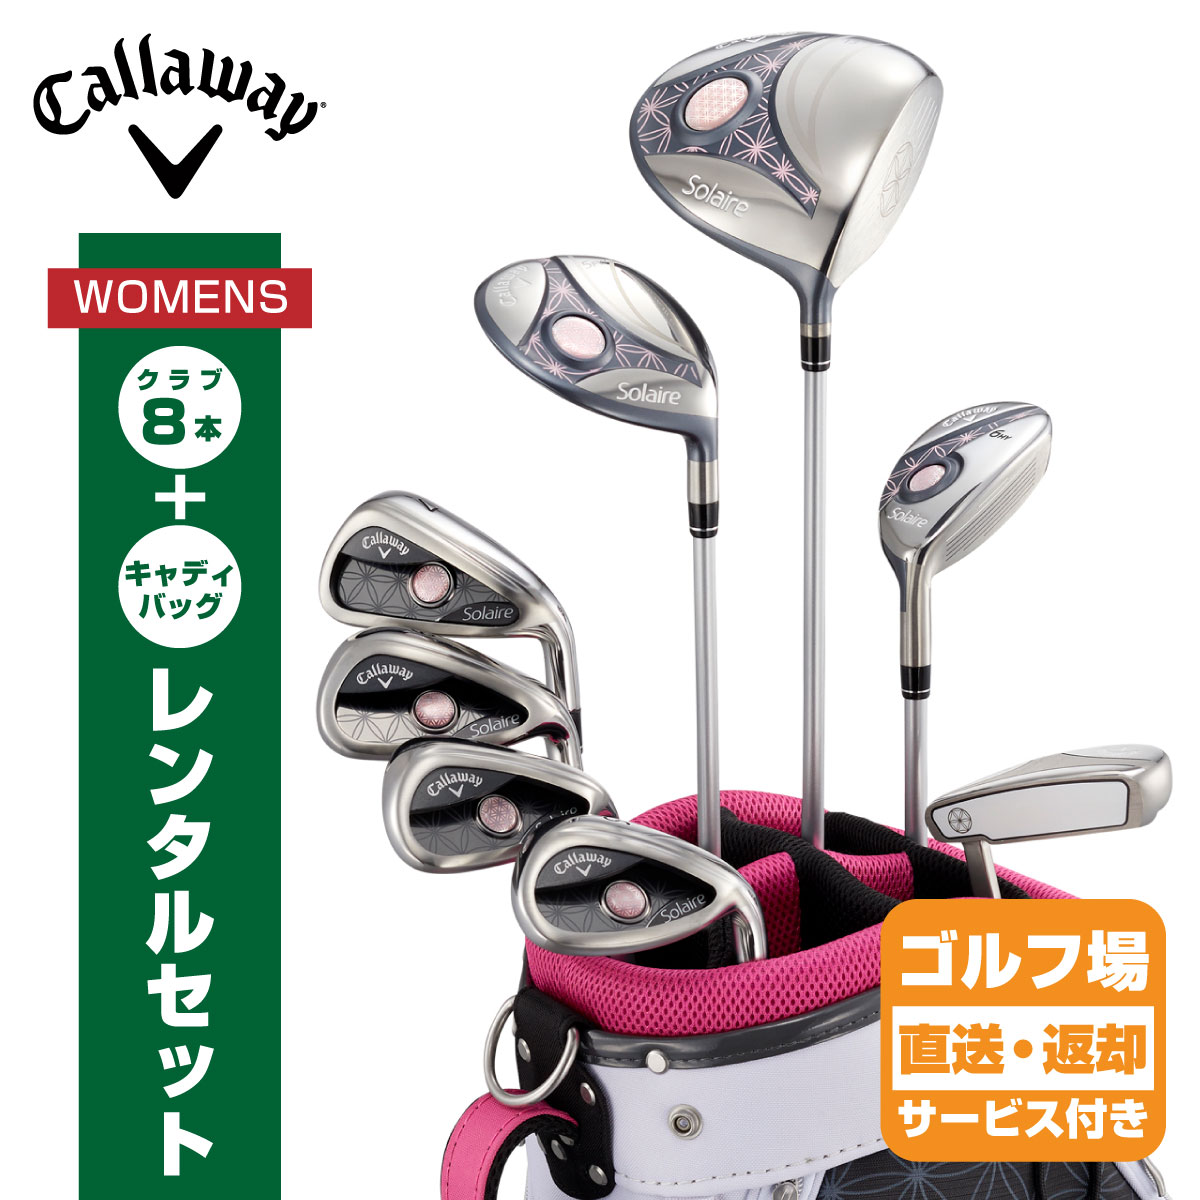 競売ゴルフ楽天市場】【レンタル】【女性向けゴルフセット】キャロウェイ solaire